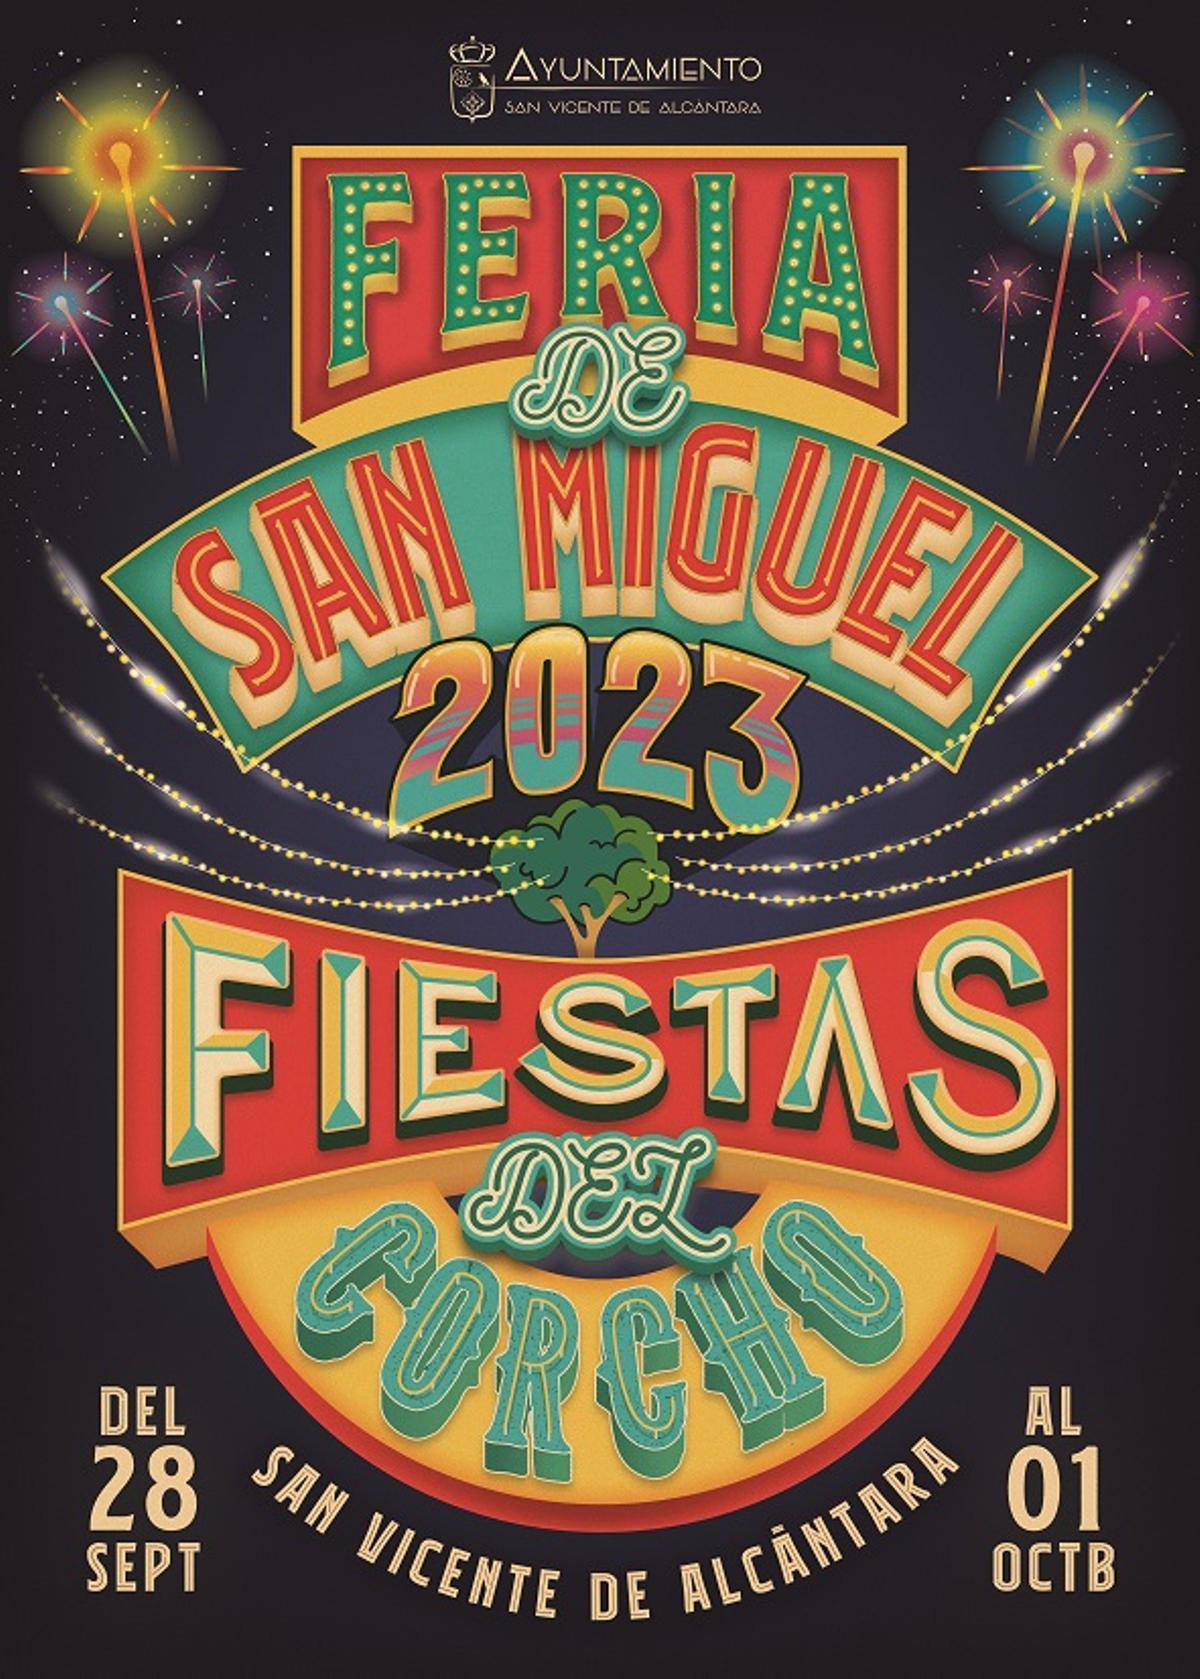 Cartel de la Feria de San Miguel 2023-Fiestas del Corcho.